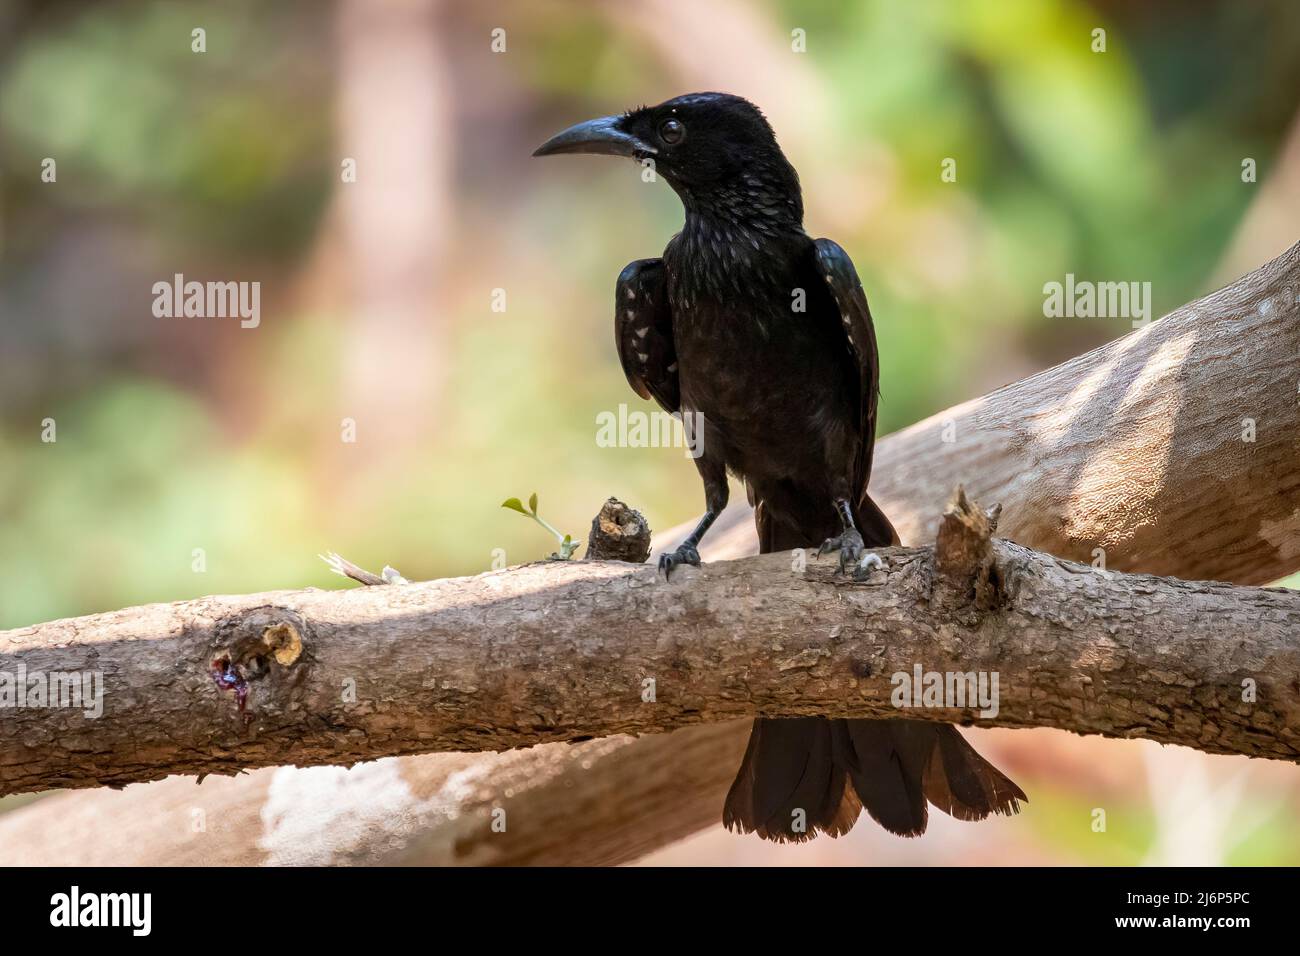 Image d'un oiseau drongo piquant sur une branche d'arbre sur fond de nature. Animaux. Banque D'Images